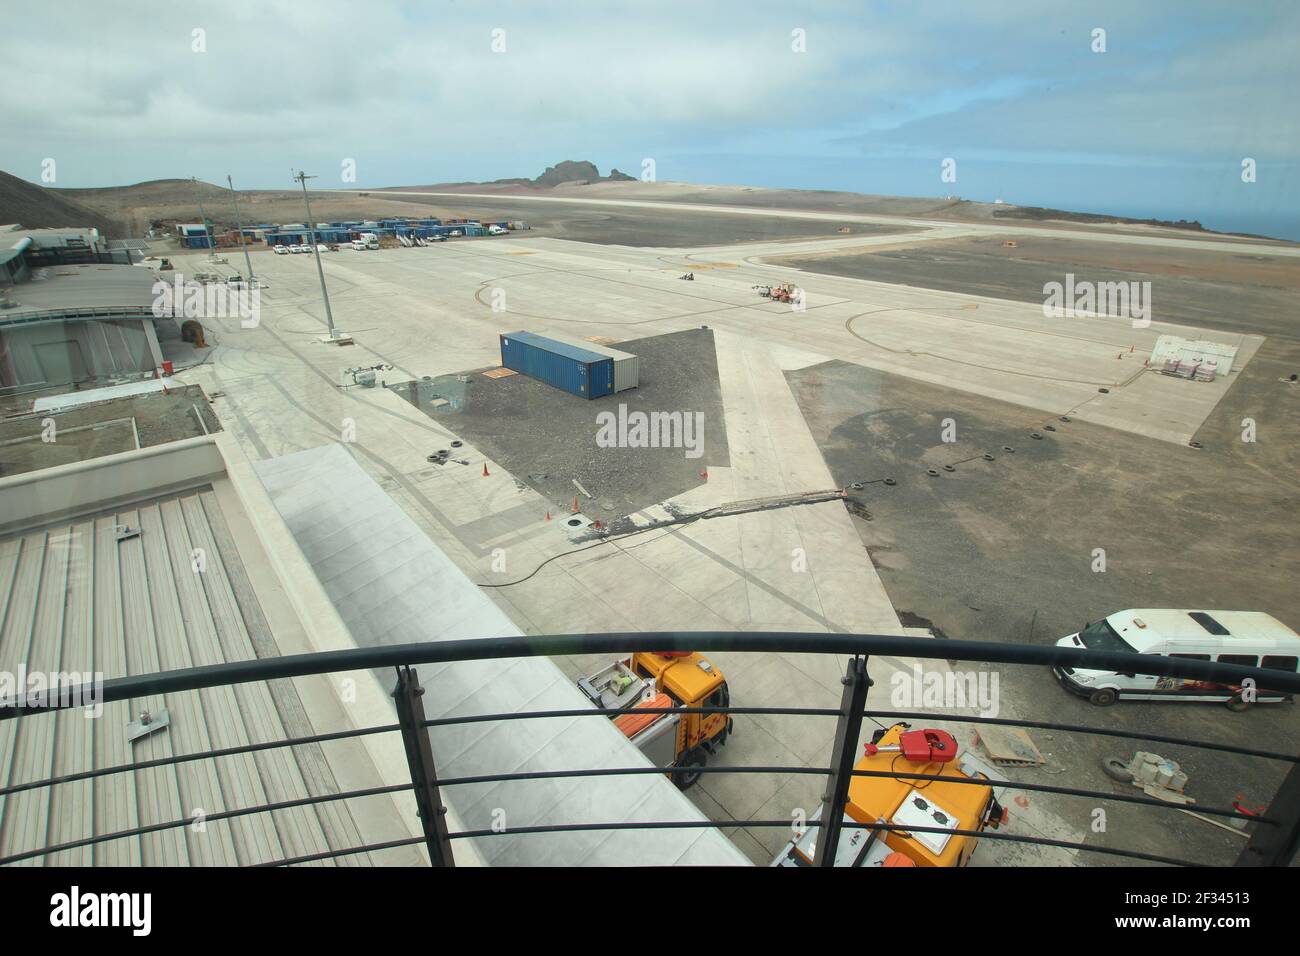 SAINTE-HÉLÈNE - 12 OCTOBRE 2015 : vue depuis la tour de contrôle de la circulation aérienne de l'aéroport international de Sainte-Hélène, alors que la construction approche de l'achèvement Banque D'Images